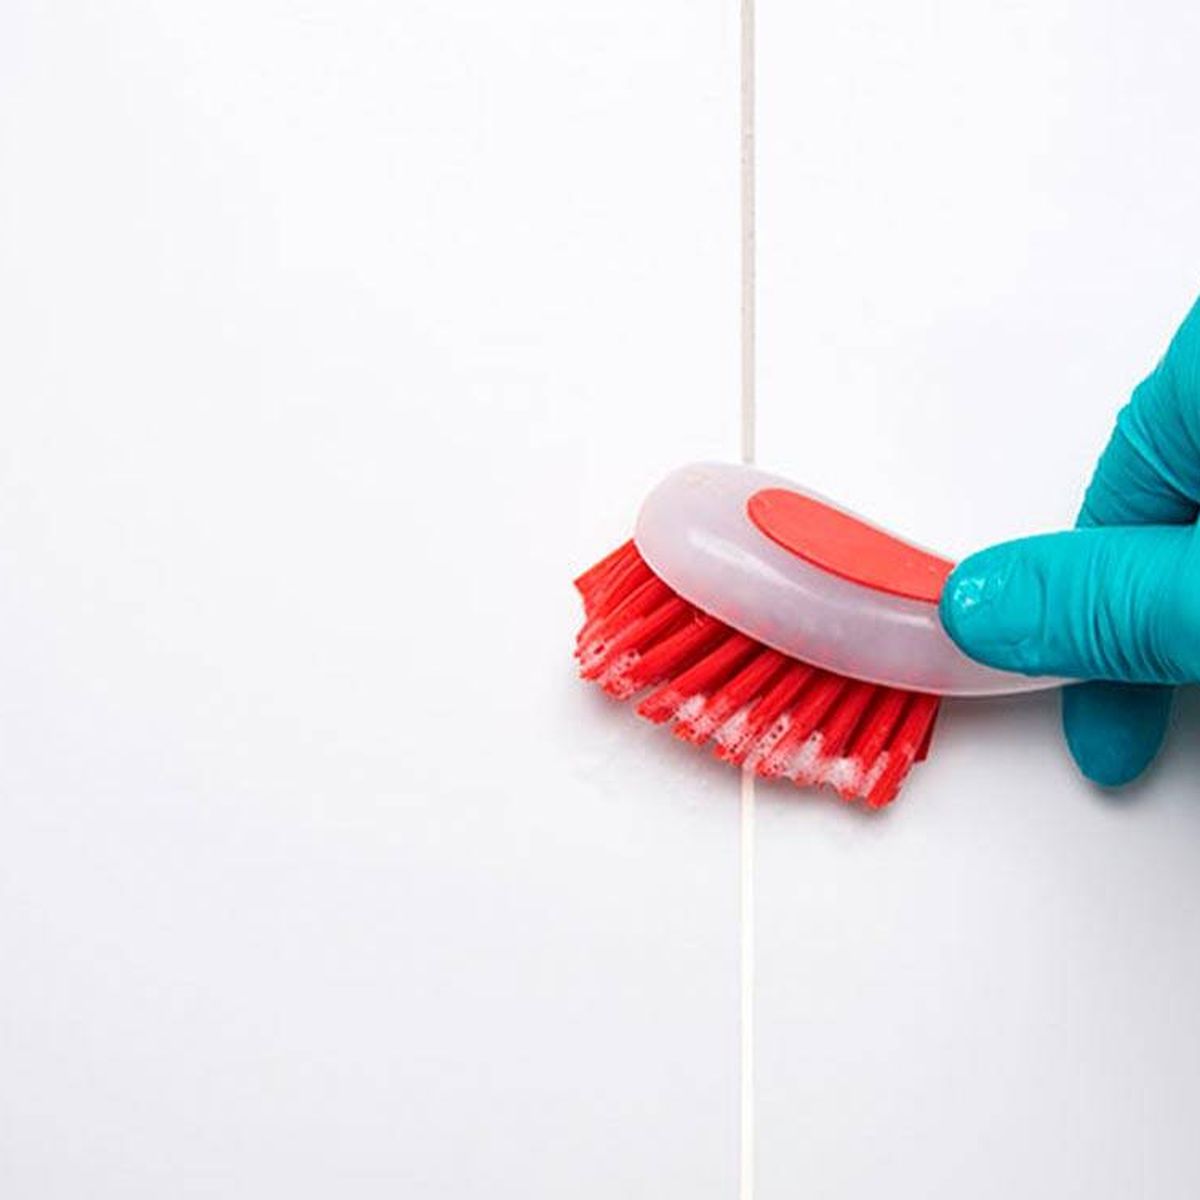 Cómo limpiar las juntas del suelo, según expertos en limpieza